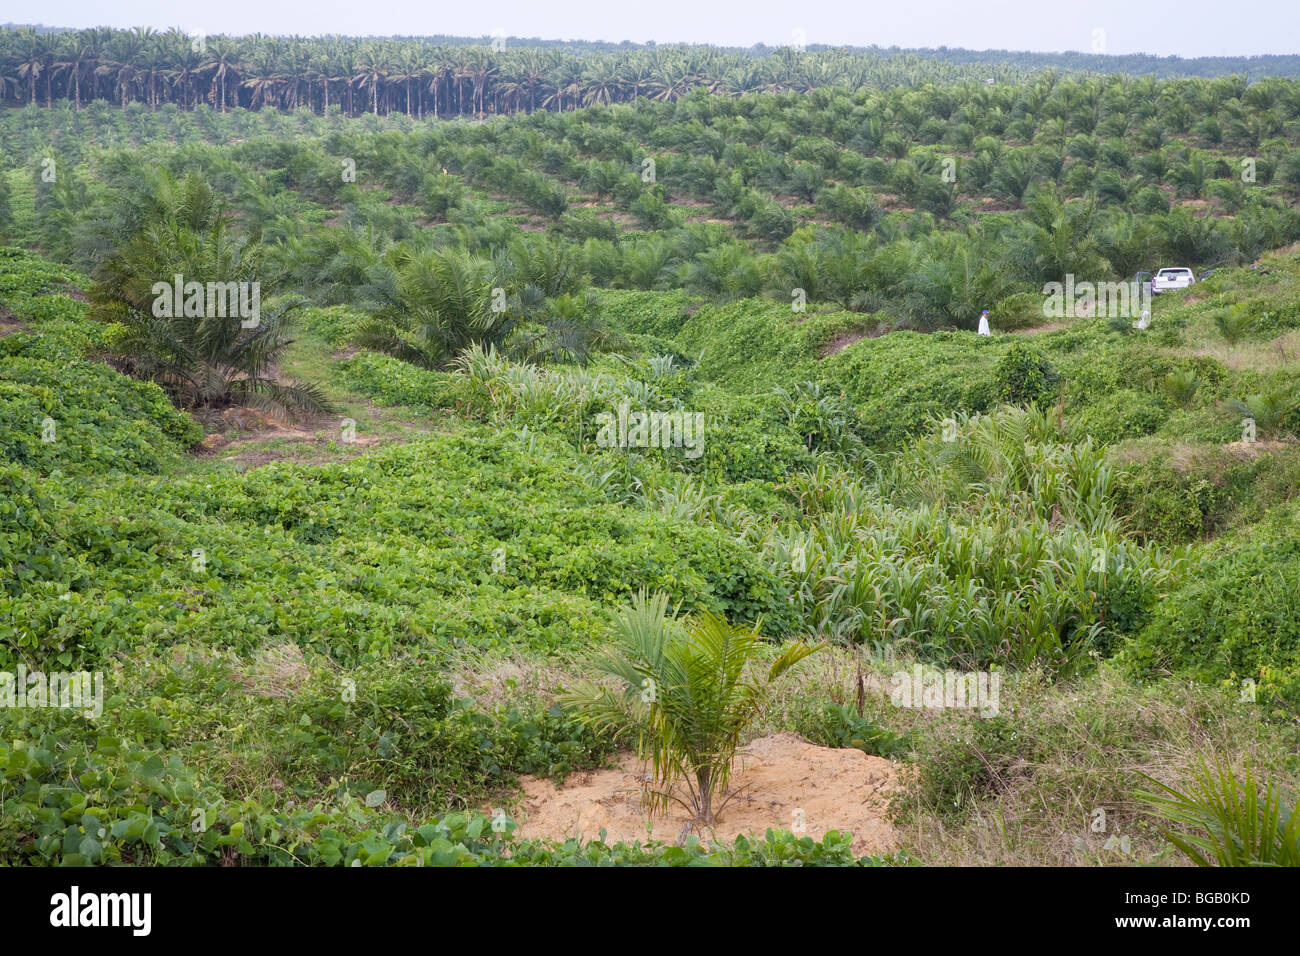 La palma de aceite recién plantados en primer plano con 3 años de viejos árboles en medio terreno y árboles maduros en segundo plano. Foto de stock